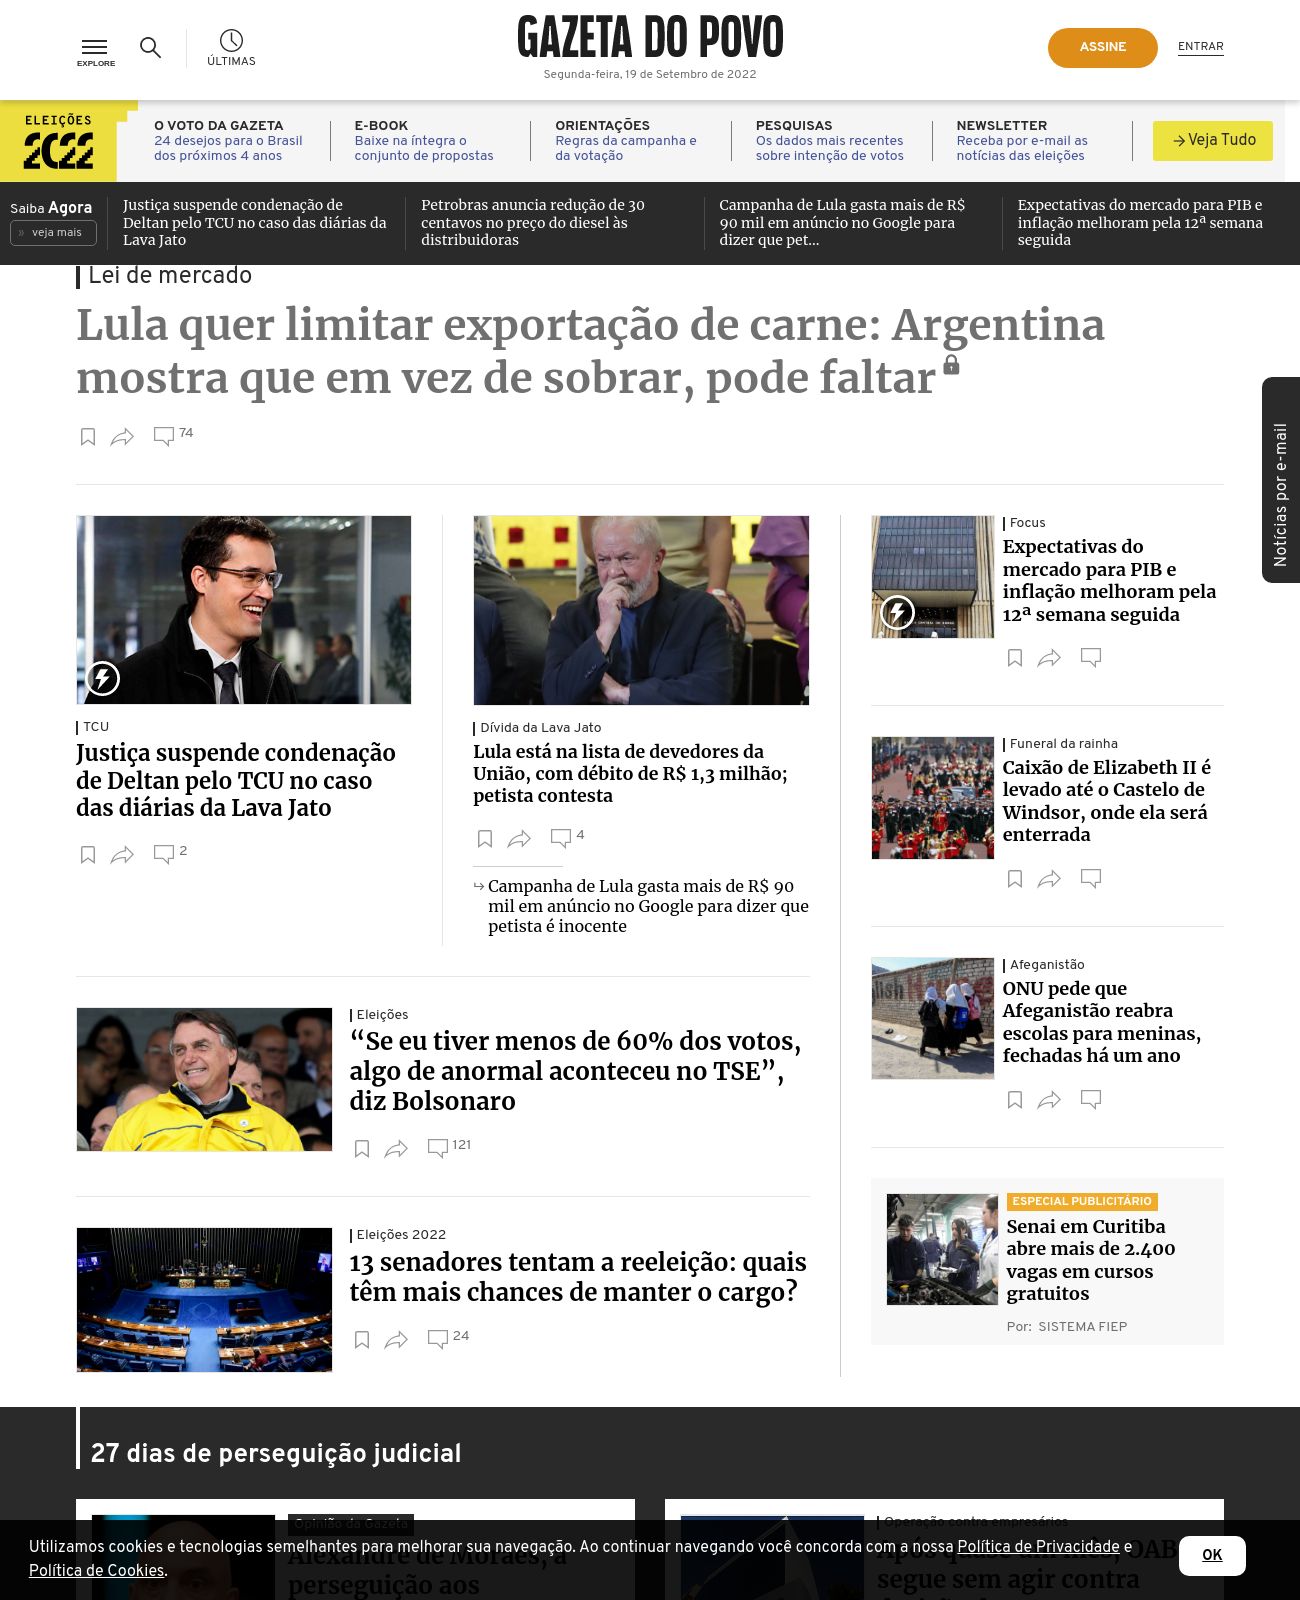 Gazeta do Povo at 2022-09-19 13:03:44-03:00 local time